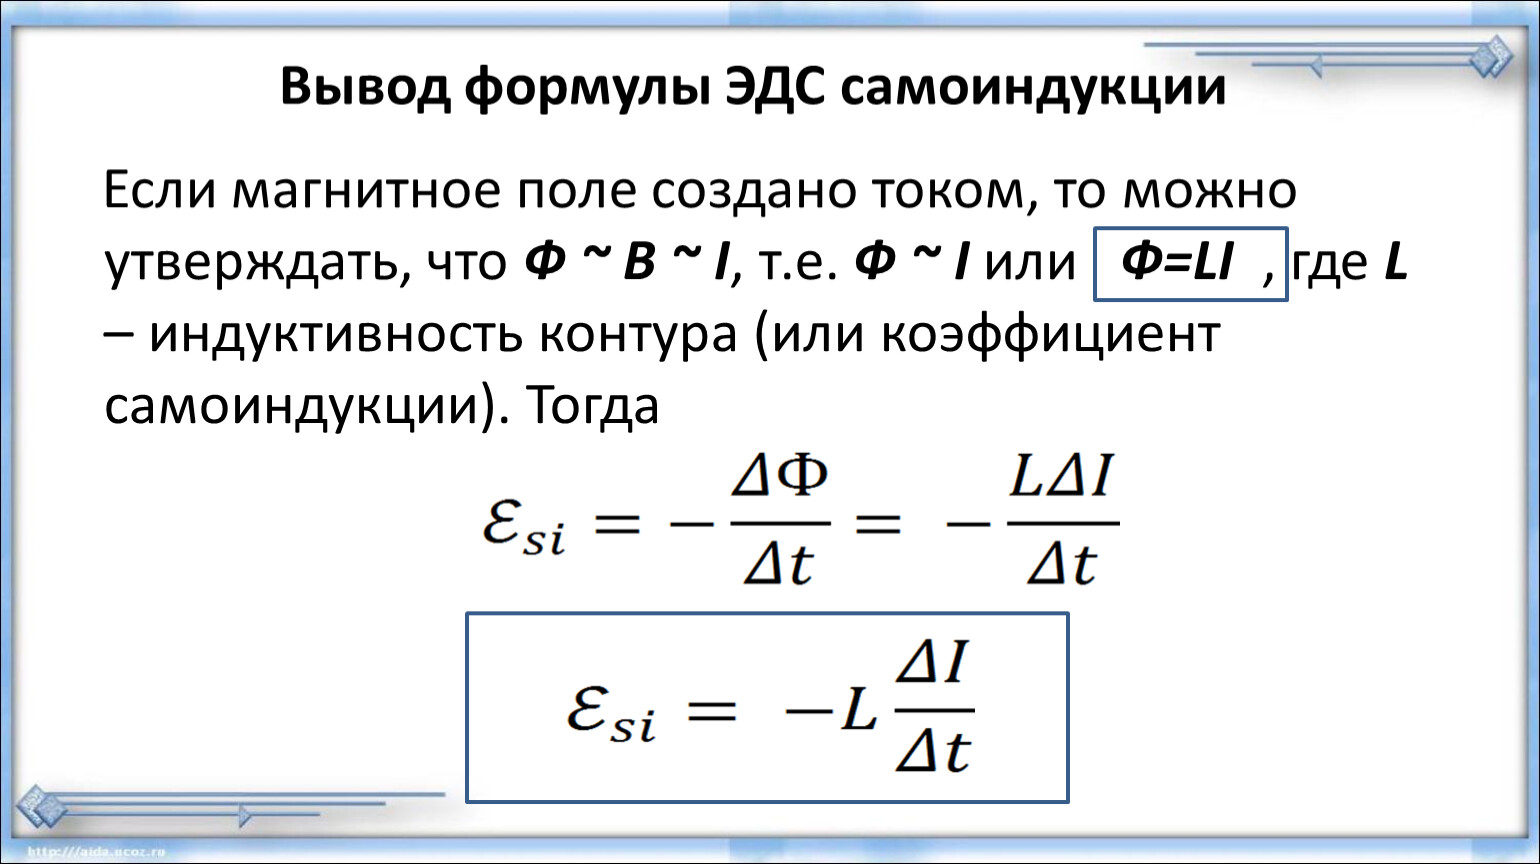 L максимальное формула. ЭДС самоиндукции формула. ЭДС самоиндукции формула через Индуктивность. Формула для расчета ЭДС самоиндукции. Формула ЭДС самоиндукции в катушке.